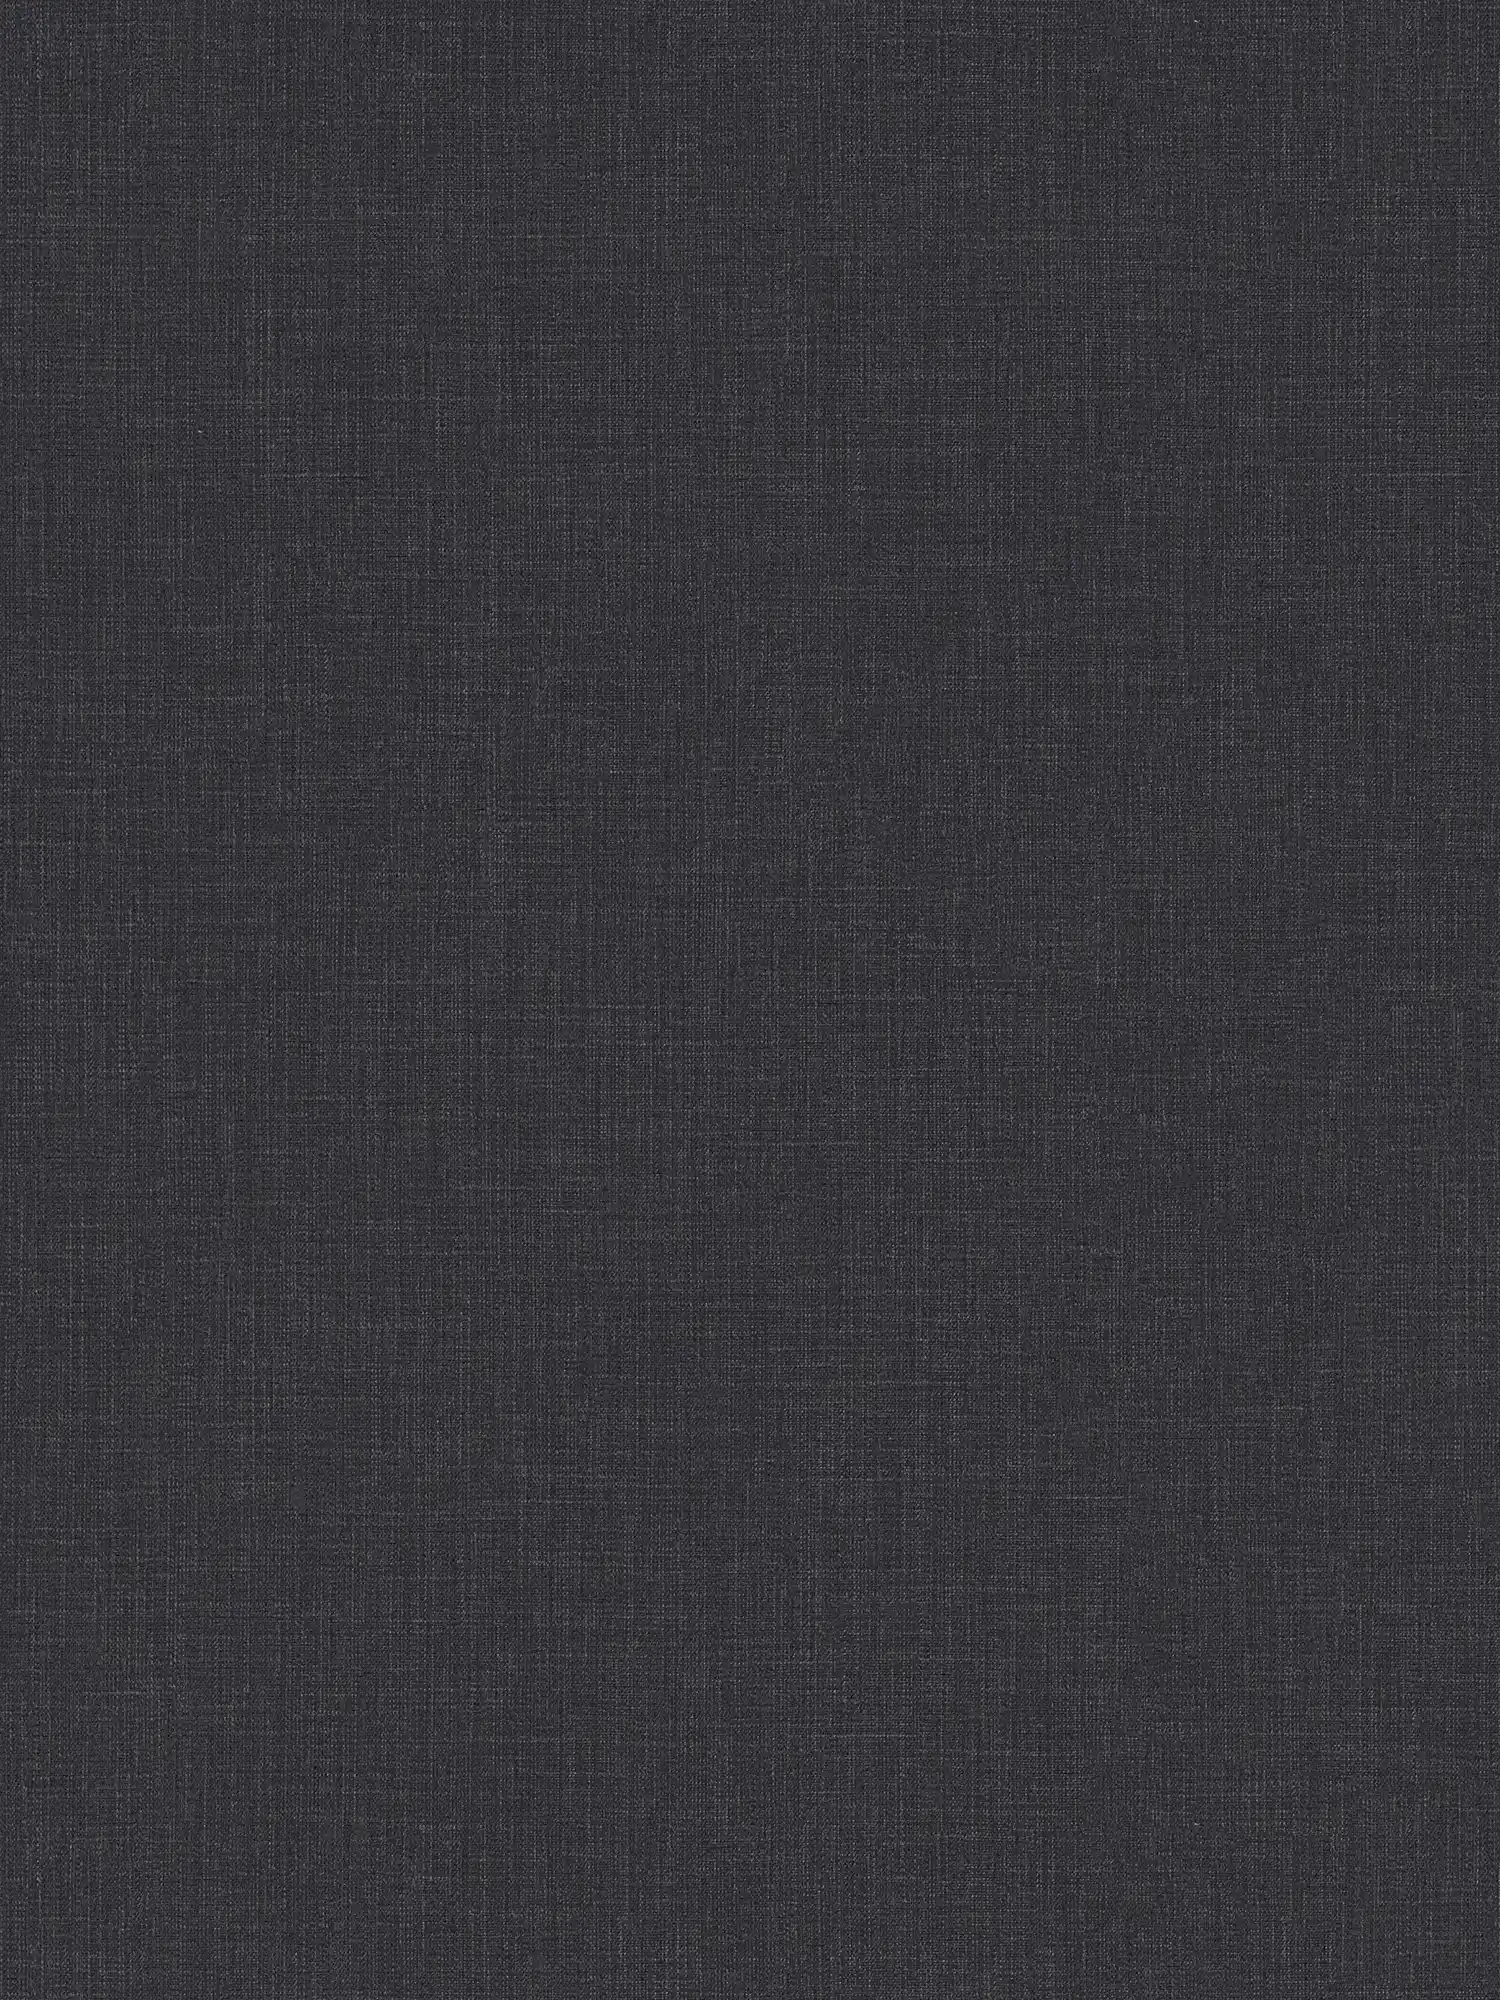 Papel pintado no tejido moteado con aspecto textil - azul, gris, blanco
